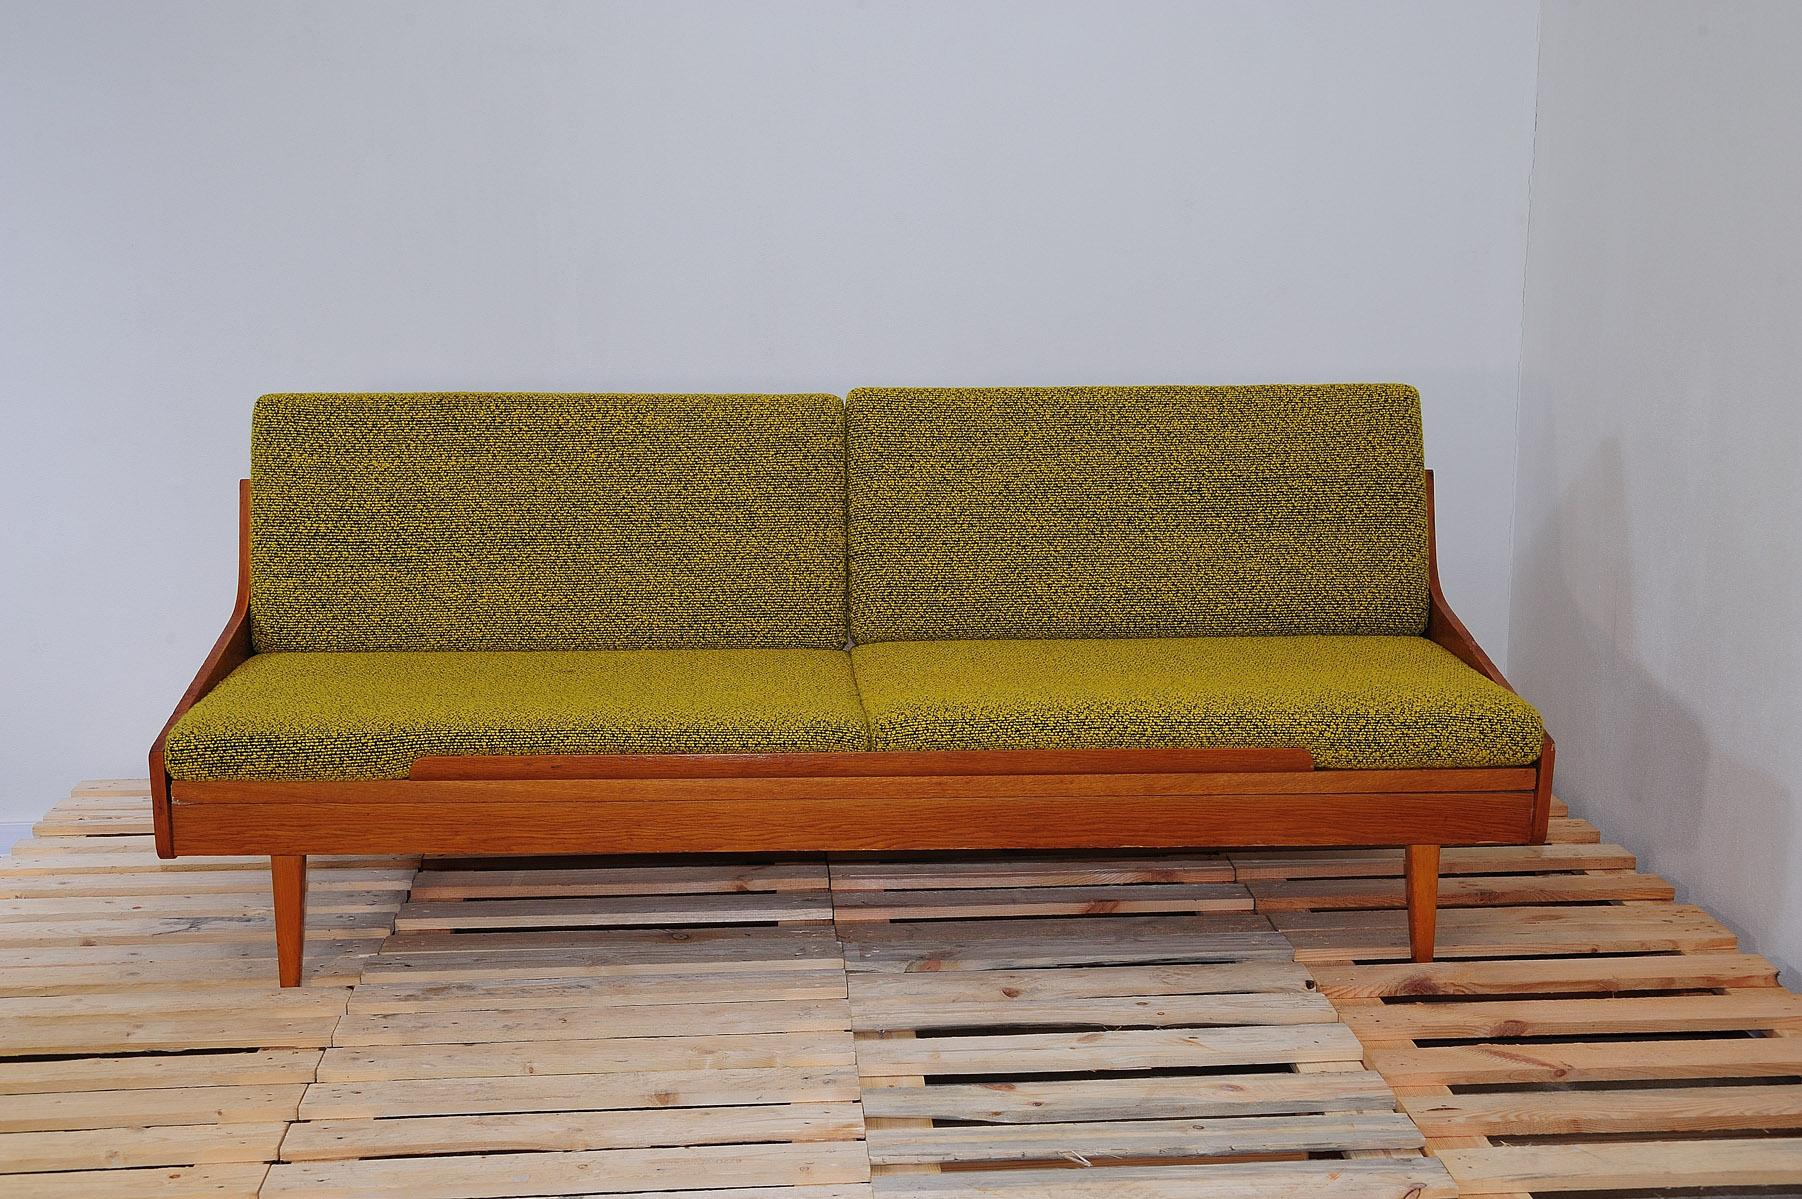 Sofabett aus der Mitte des Jahrhunderts von Interiér Praha. Es wurde in der ehemaligen Tschechoslowakei in den 1960er Jahren hergestellt. Dieses Sofa hat eine Holzstruktur, die mit Buchenholz furniert ist. Die Matratzen sind eher weich.

Das Sofa